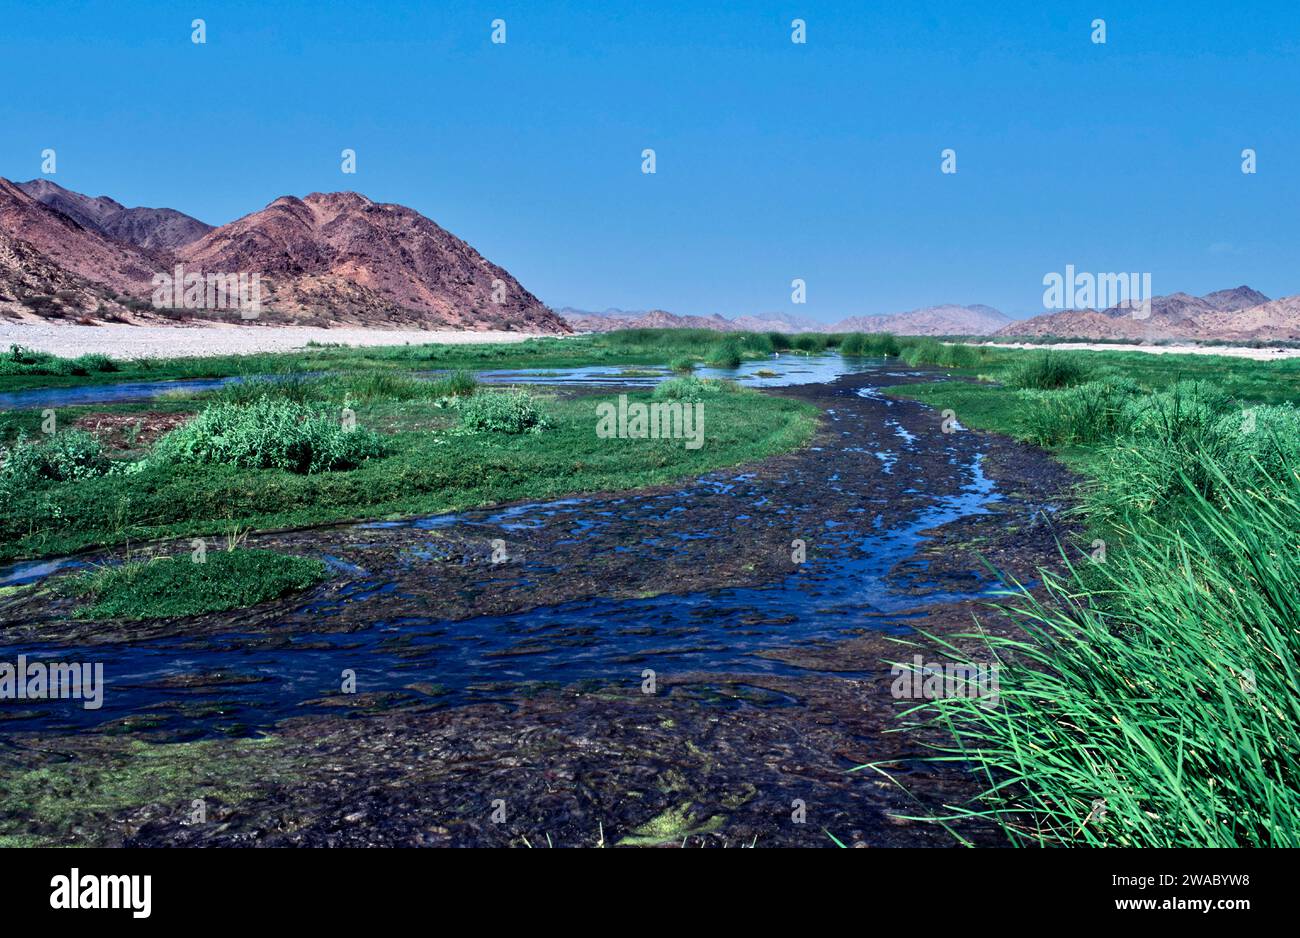 Arabie Saoudite dans le désert une rivière qui coule avec de l'eau chaude d'une source géothermique entourée d'une végétation luxuriante Banque D'Images